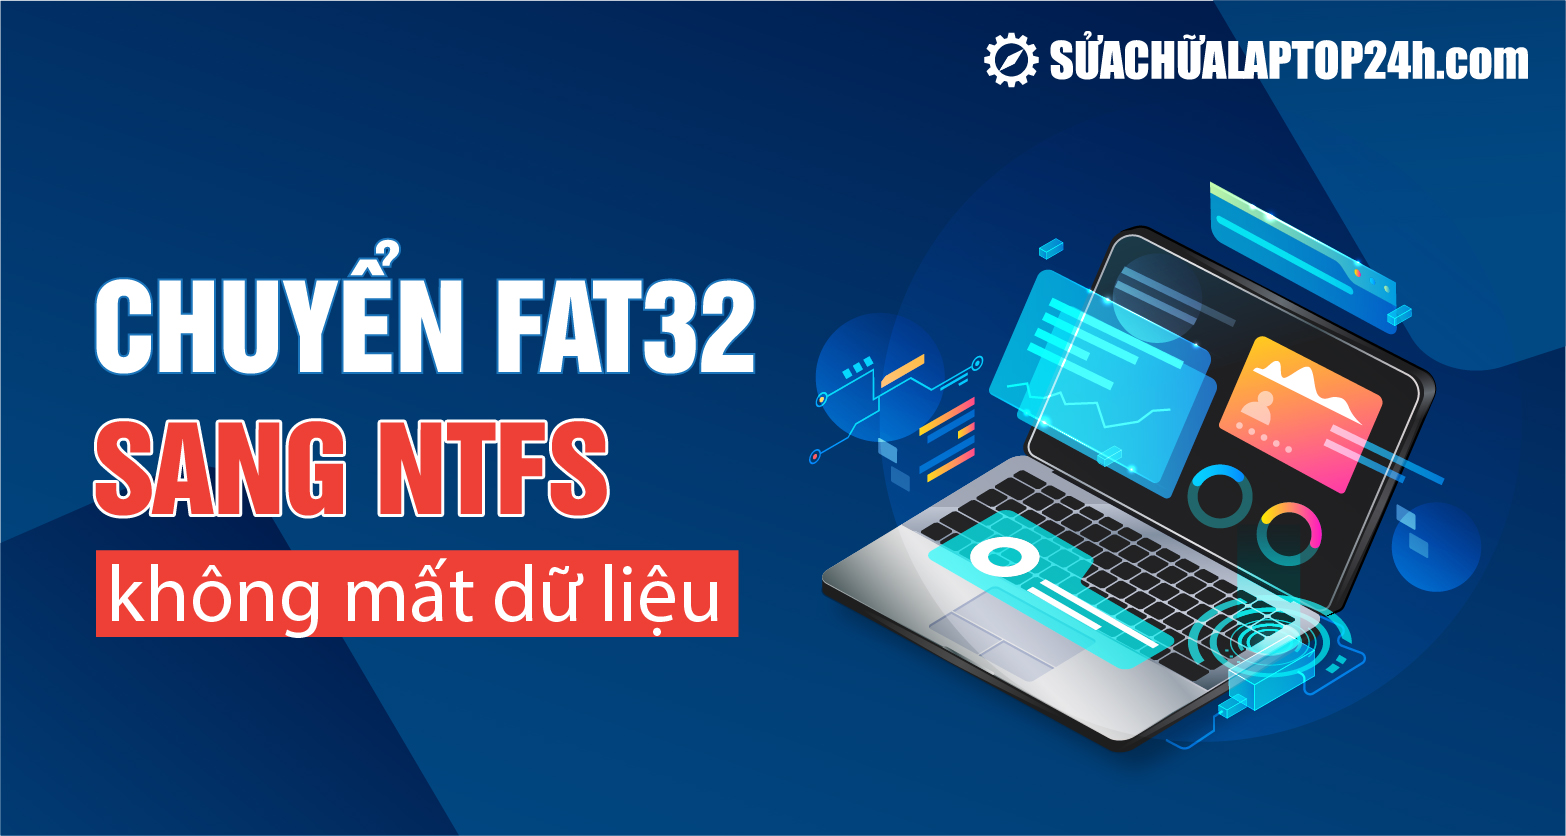 Chia sẻ cách chuyển FAT32 sang NTFS